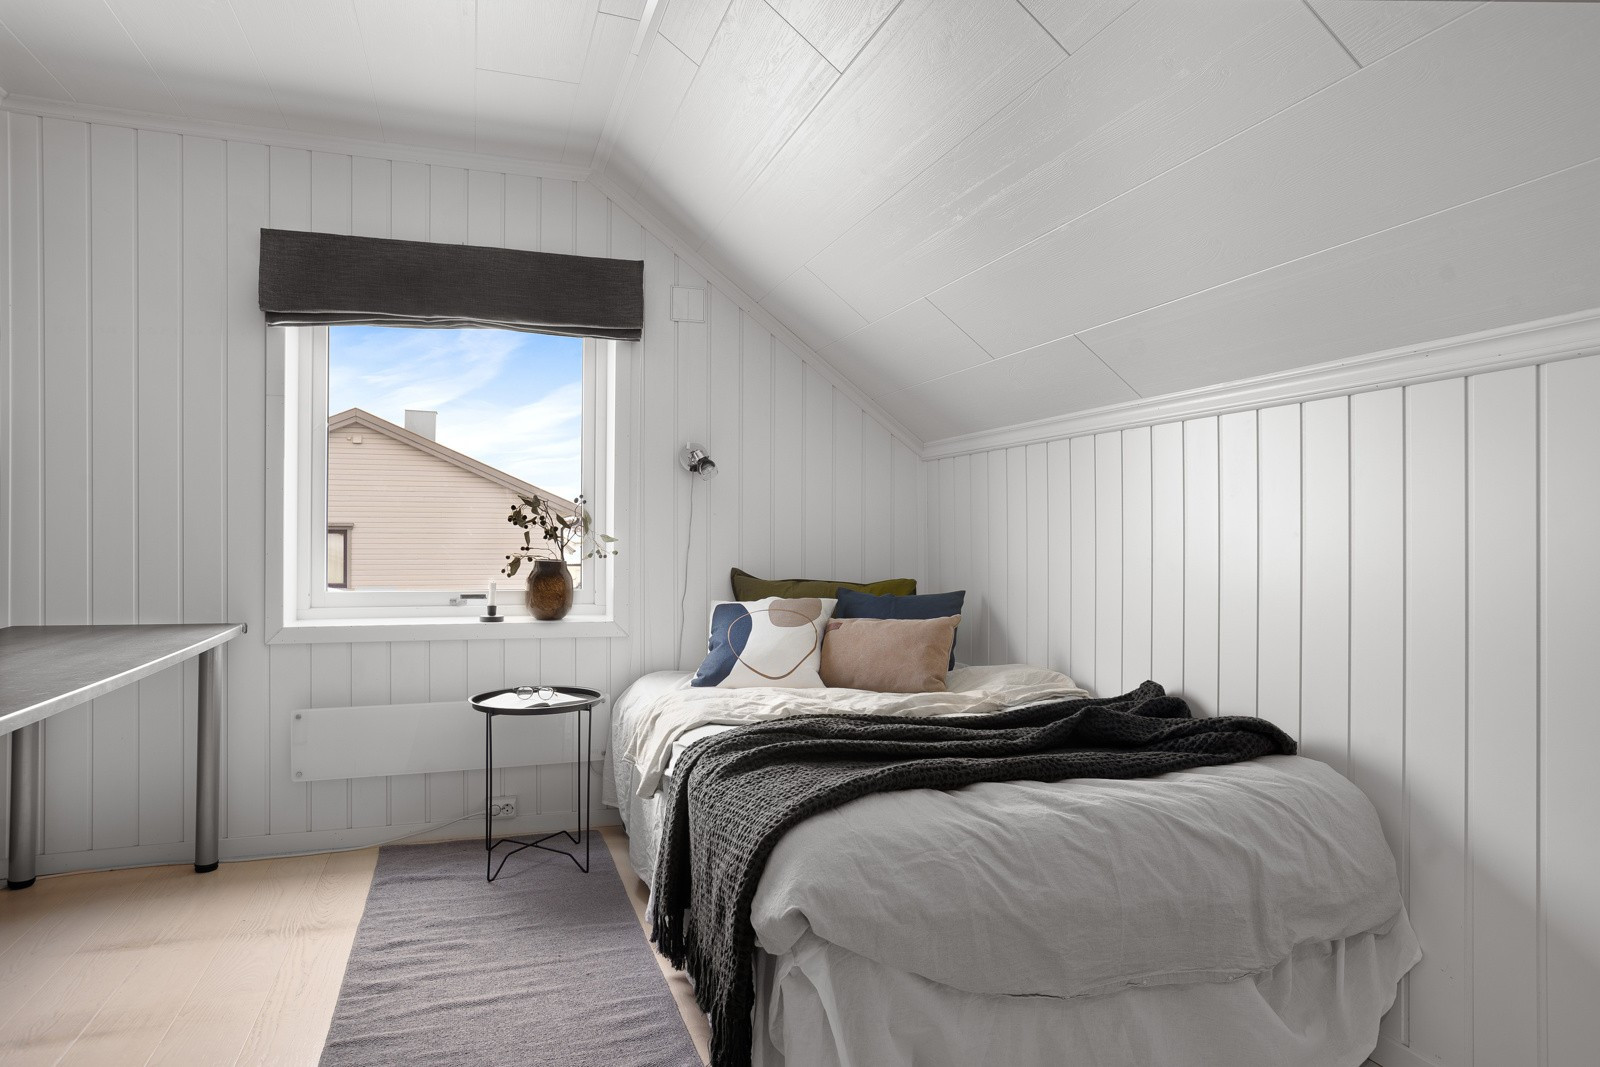 Soverom nr. 2 er også av god størrelse med plass til seng, tilhørende nattbord, skrivepult og klesoppbevaring.